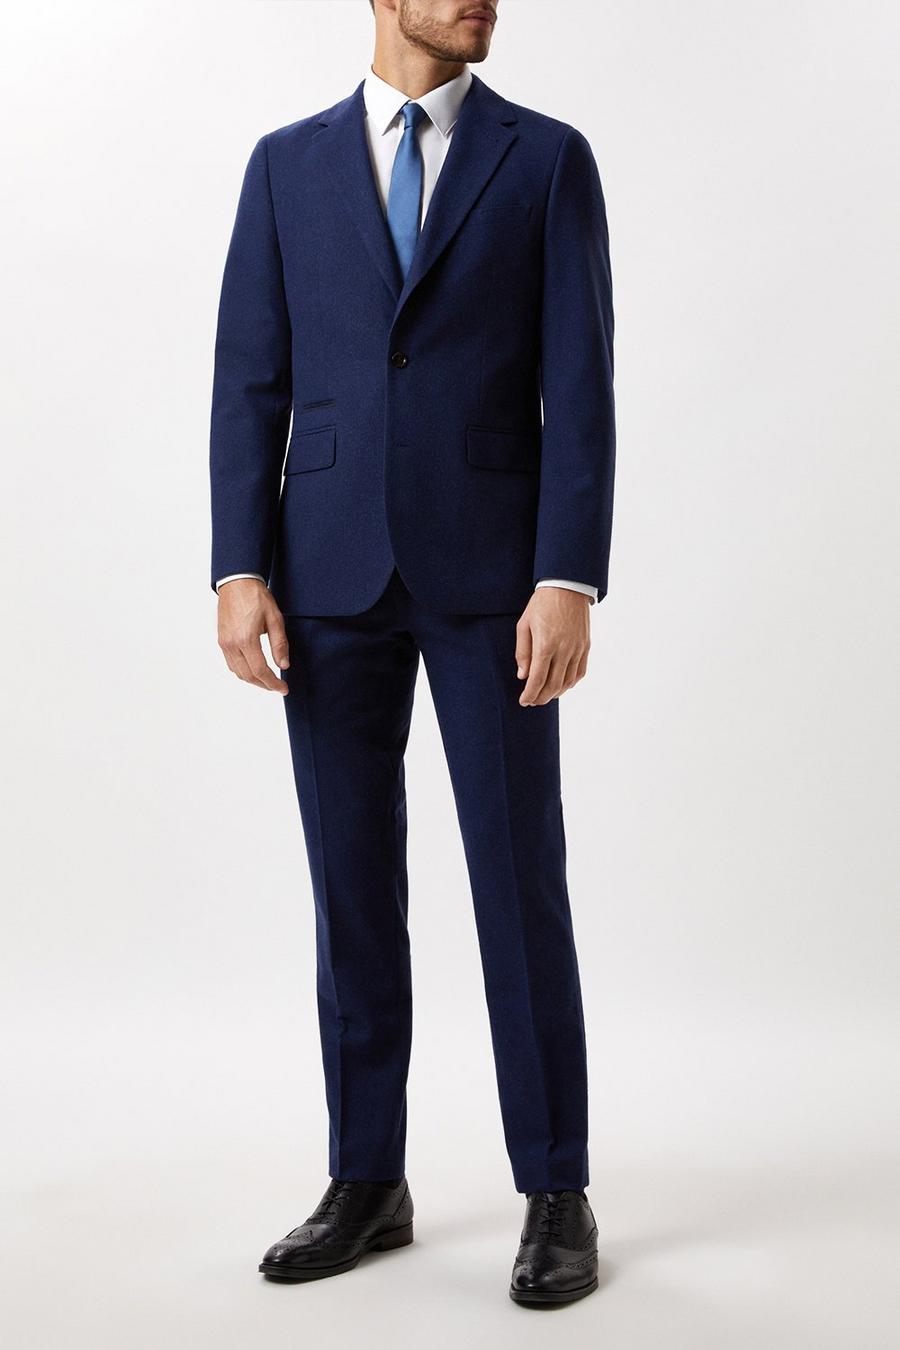 Slim Fit Navy Tweed Three-Piece Suit